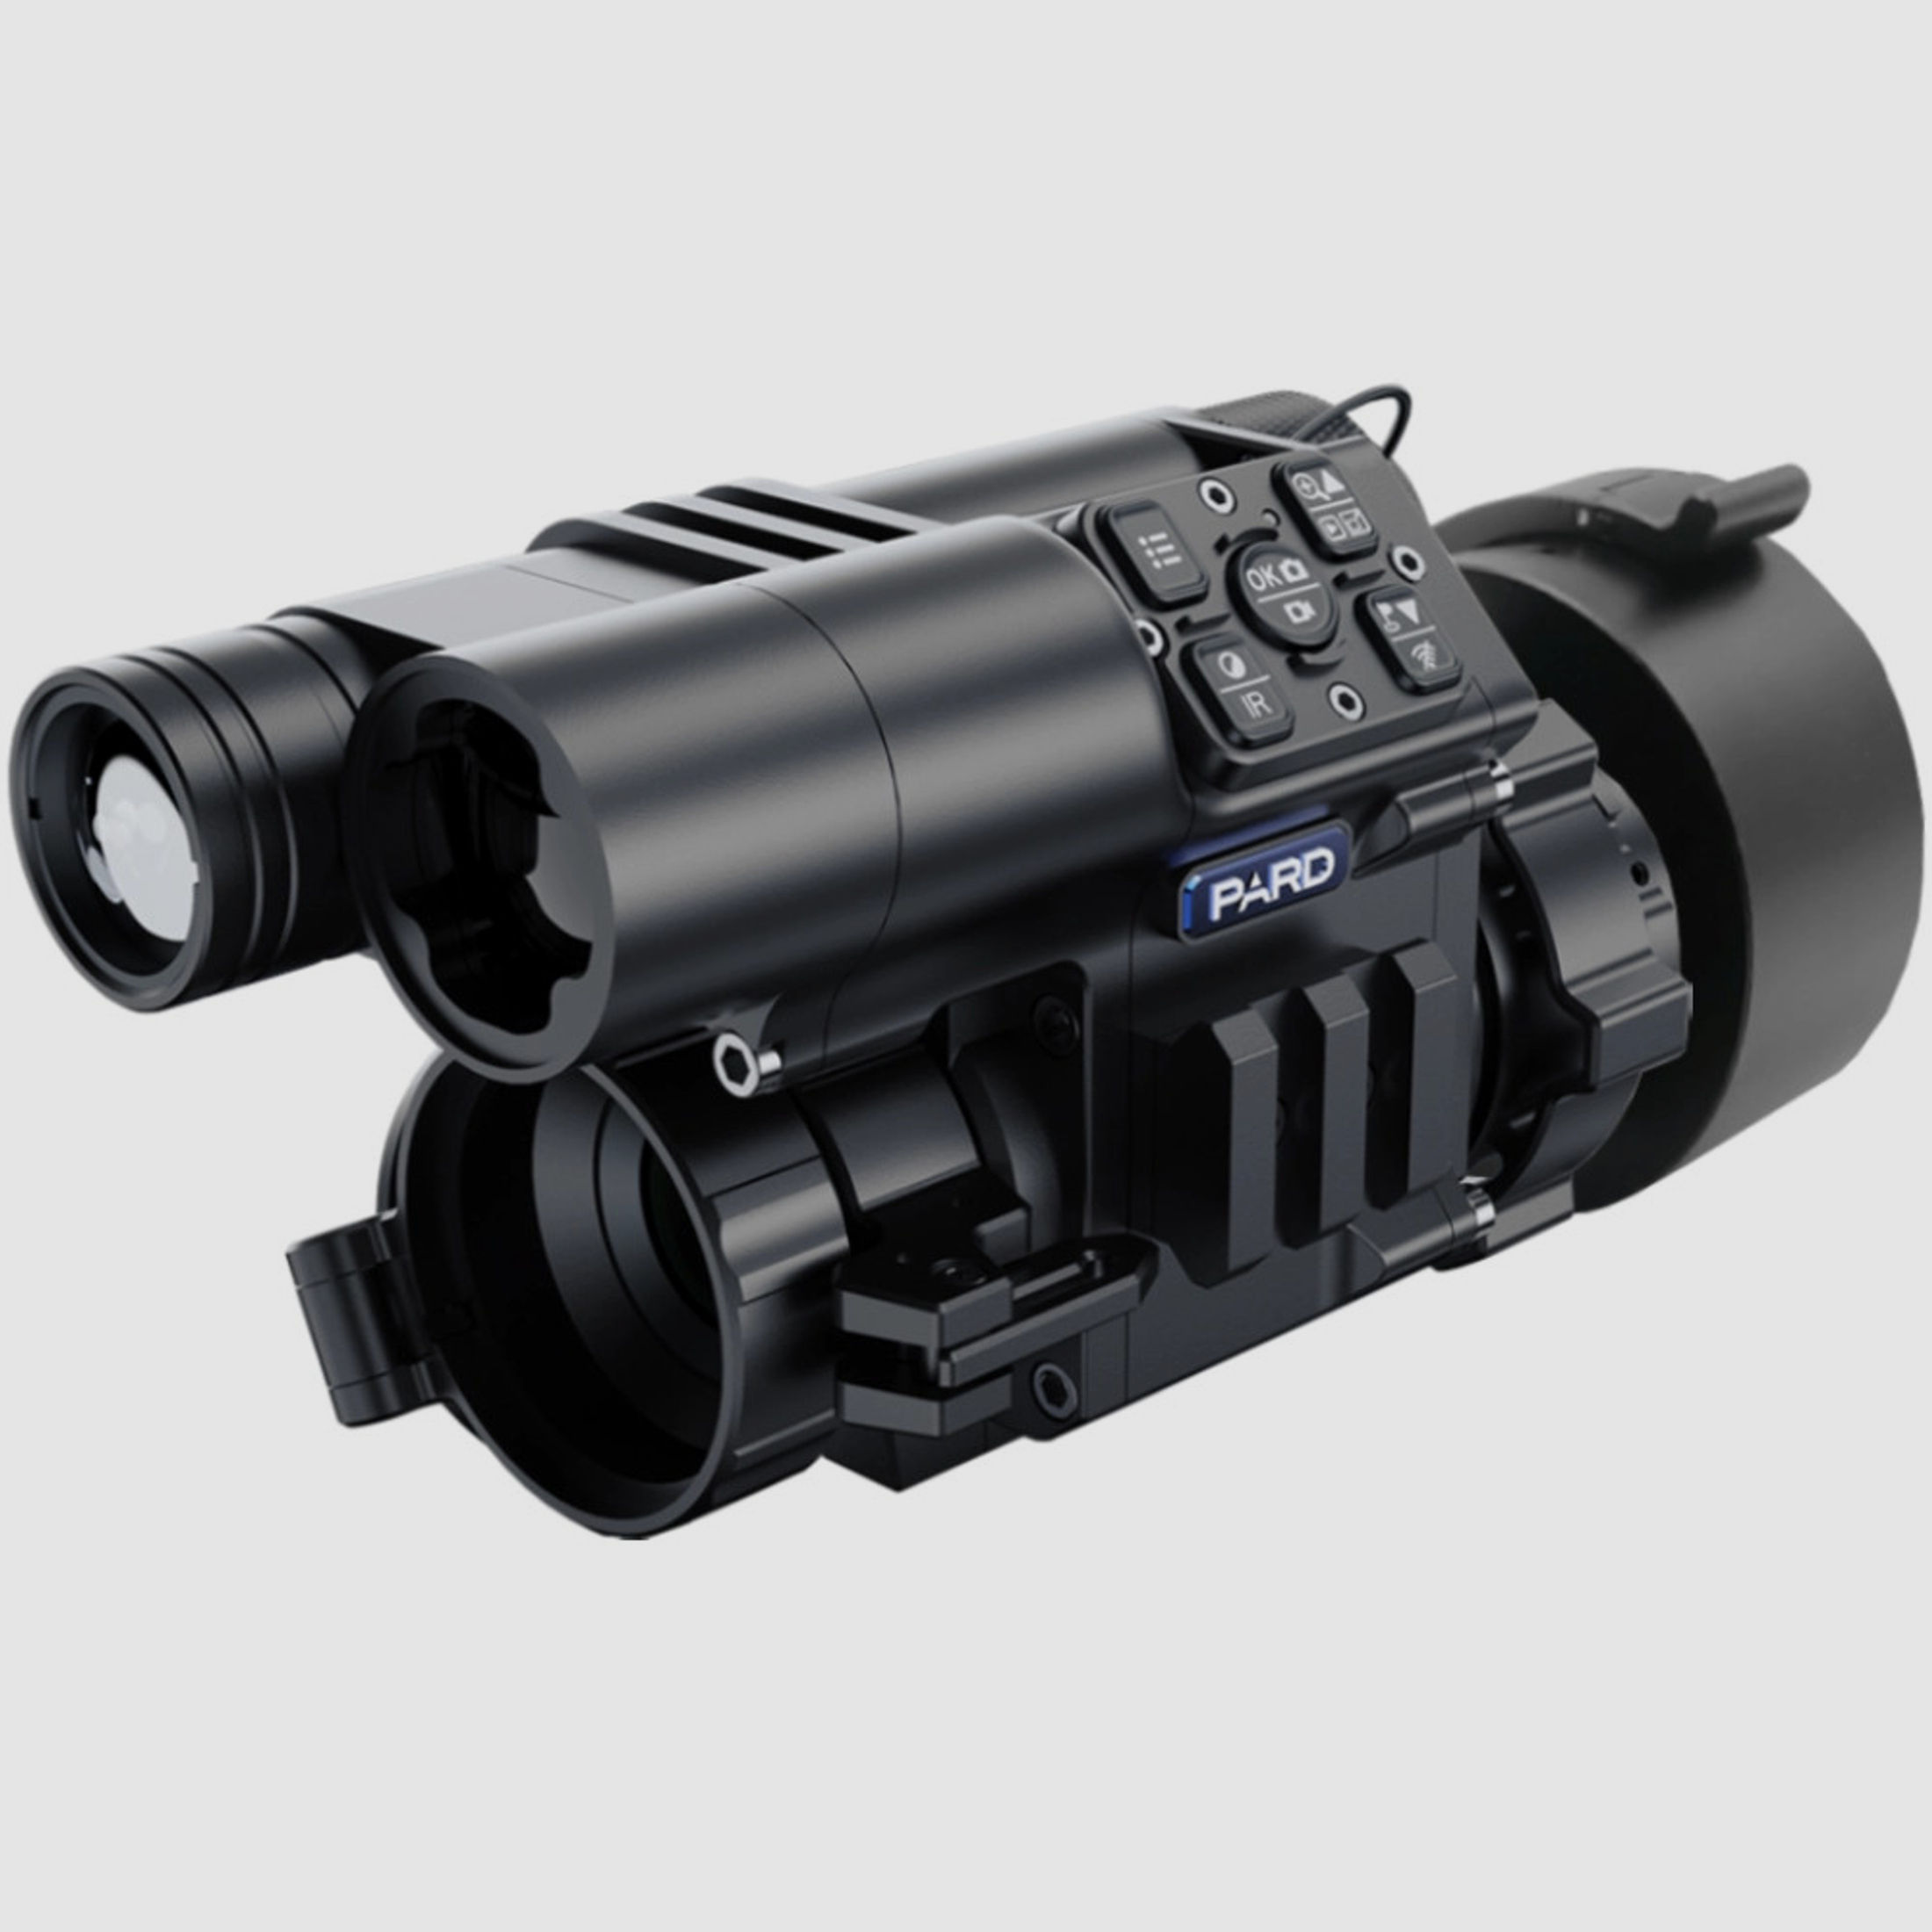 PARD FD1 Nachtsicht 3 in 1 Vorsatz, Monokular & Zielfernrohr - 850 nm mit LRF 62 - 46 mm PARD Universaladapter (inkl. Reduzierringen)